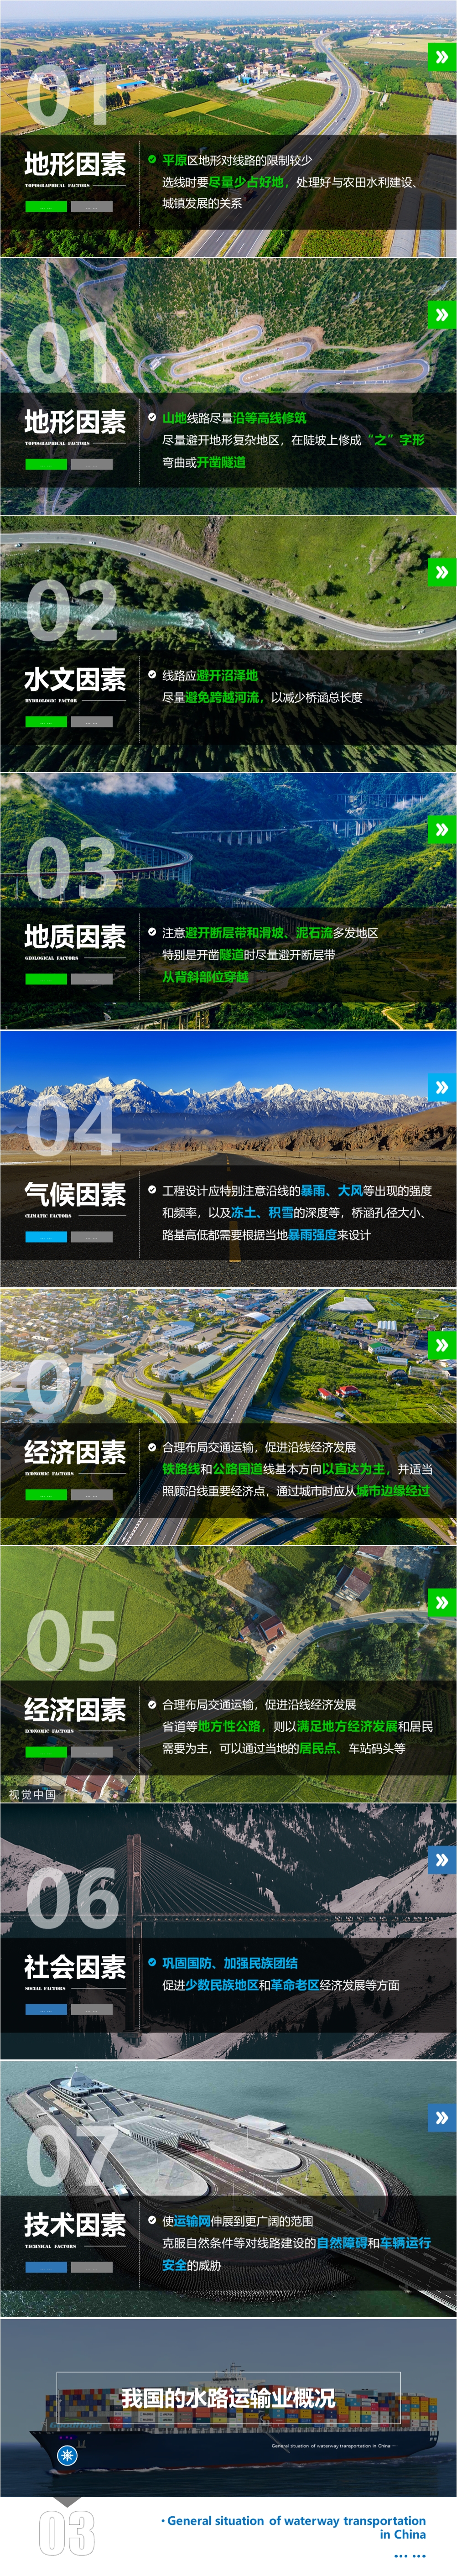 第09讲 中国的交通运输业 [2021版]-1000px-04.jpg